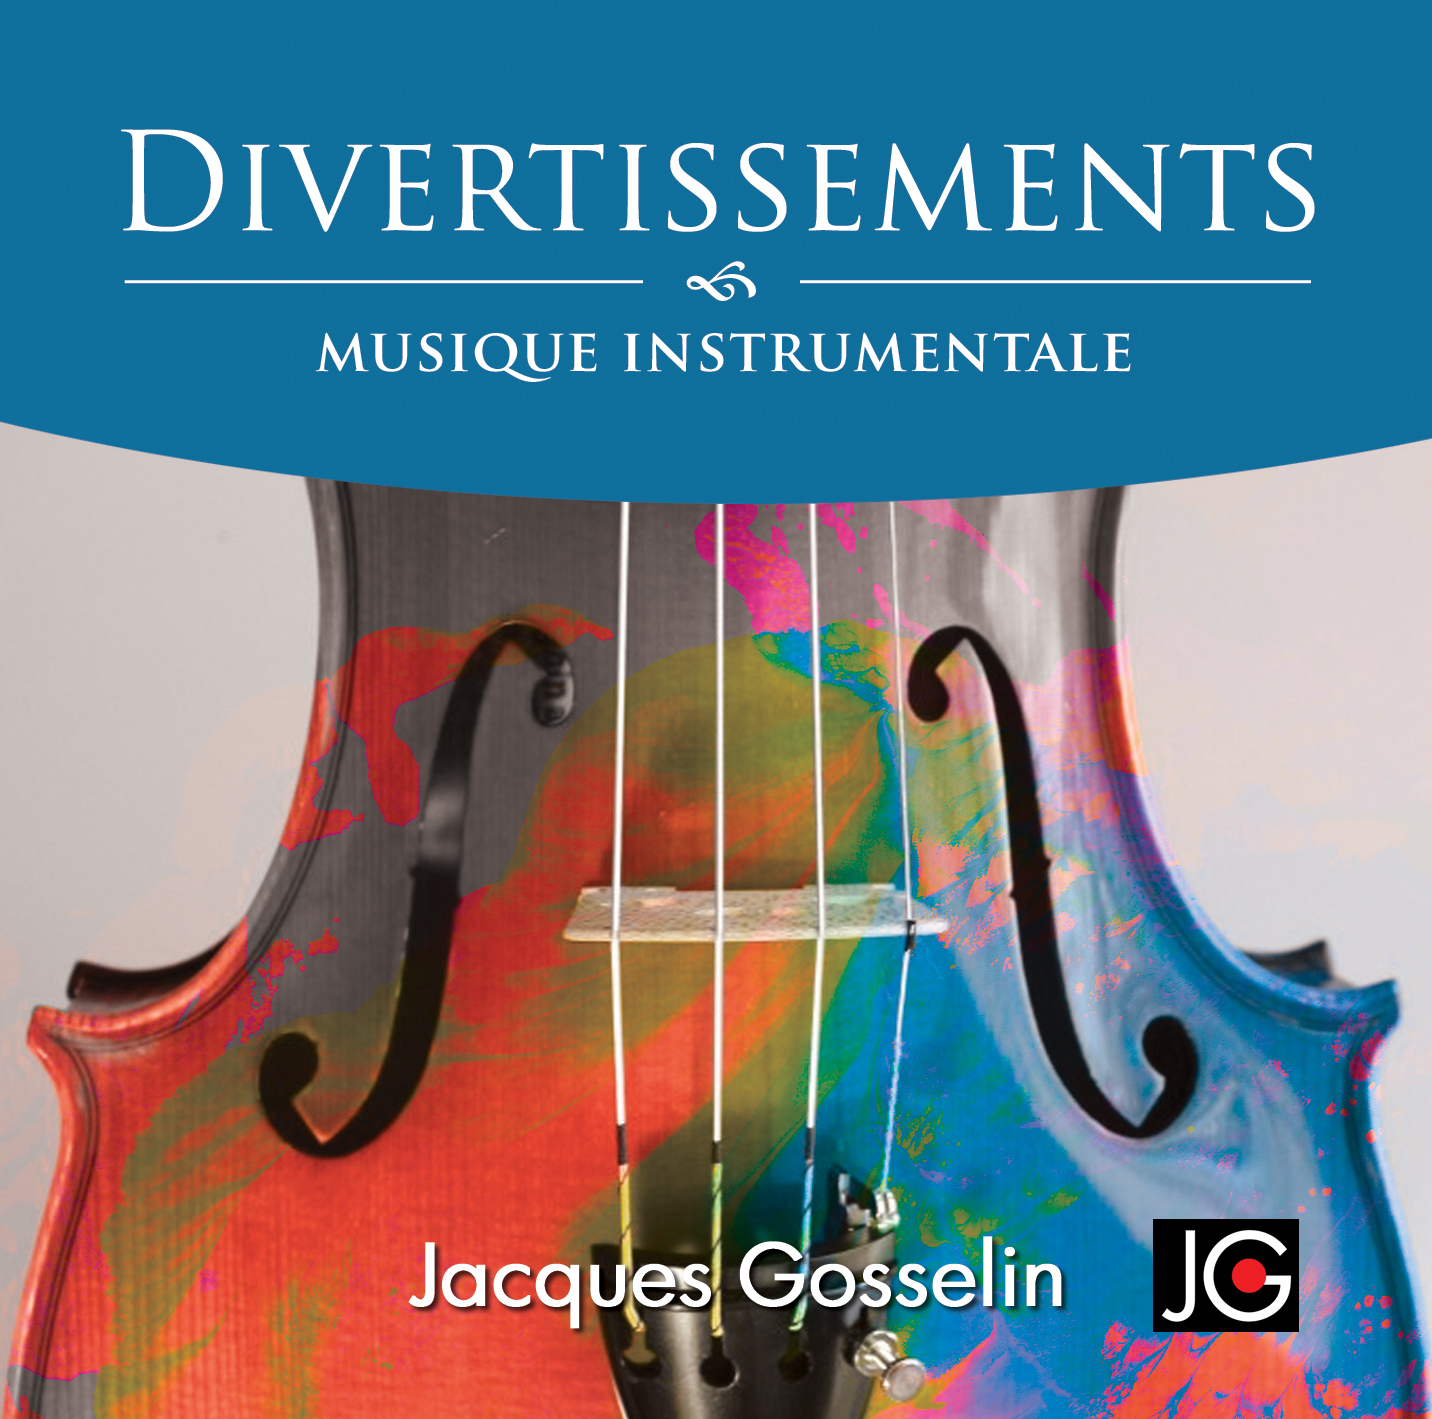 Image de l'album Divertissements de Jacques Gosselin